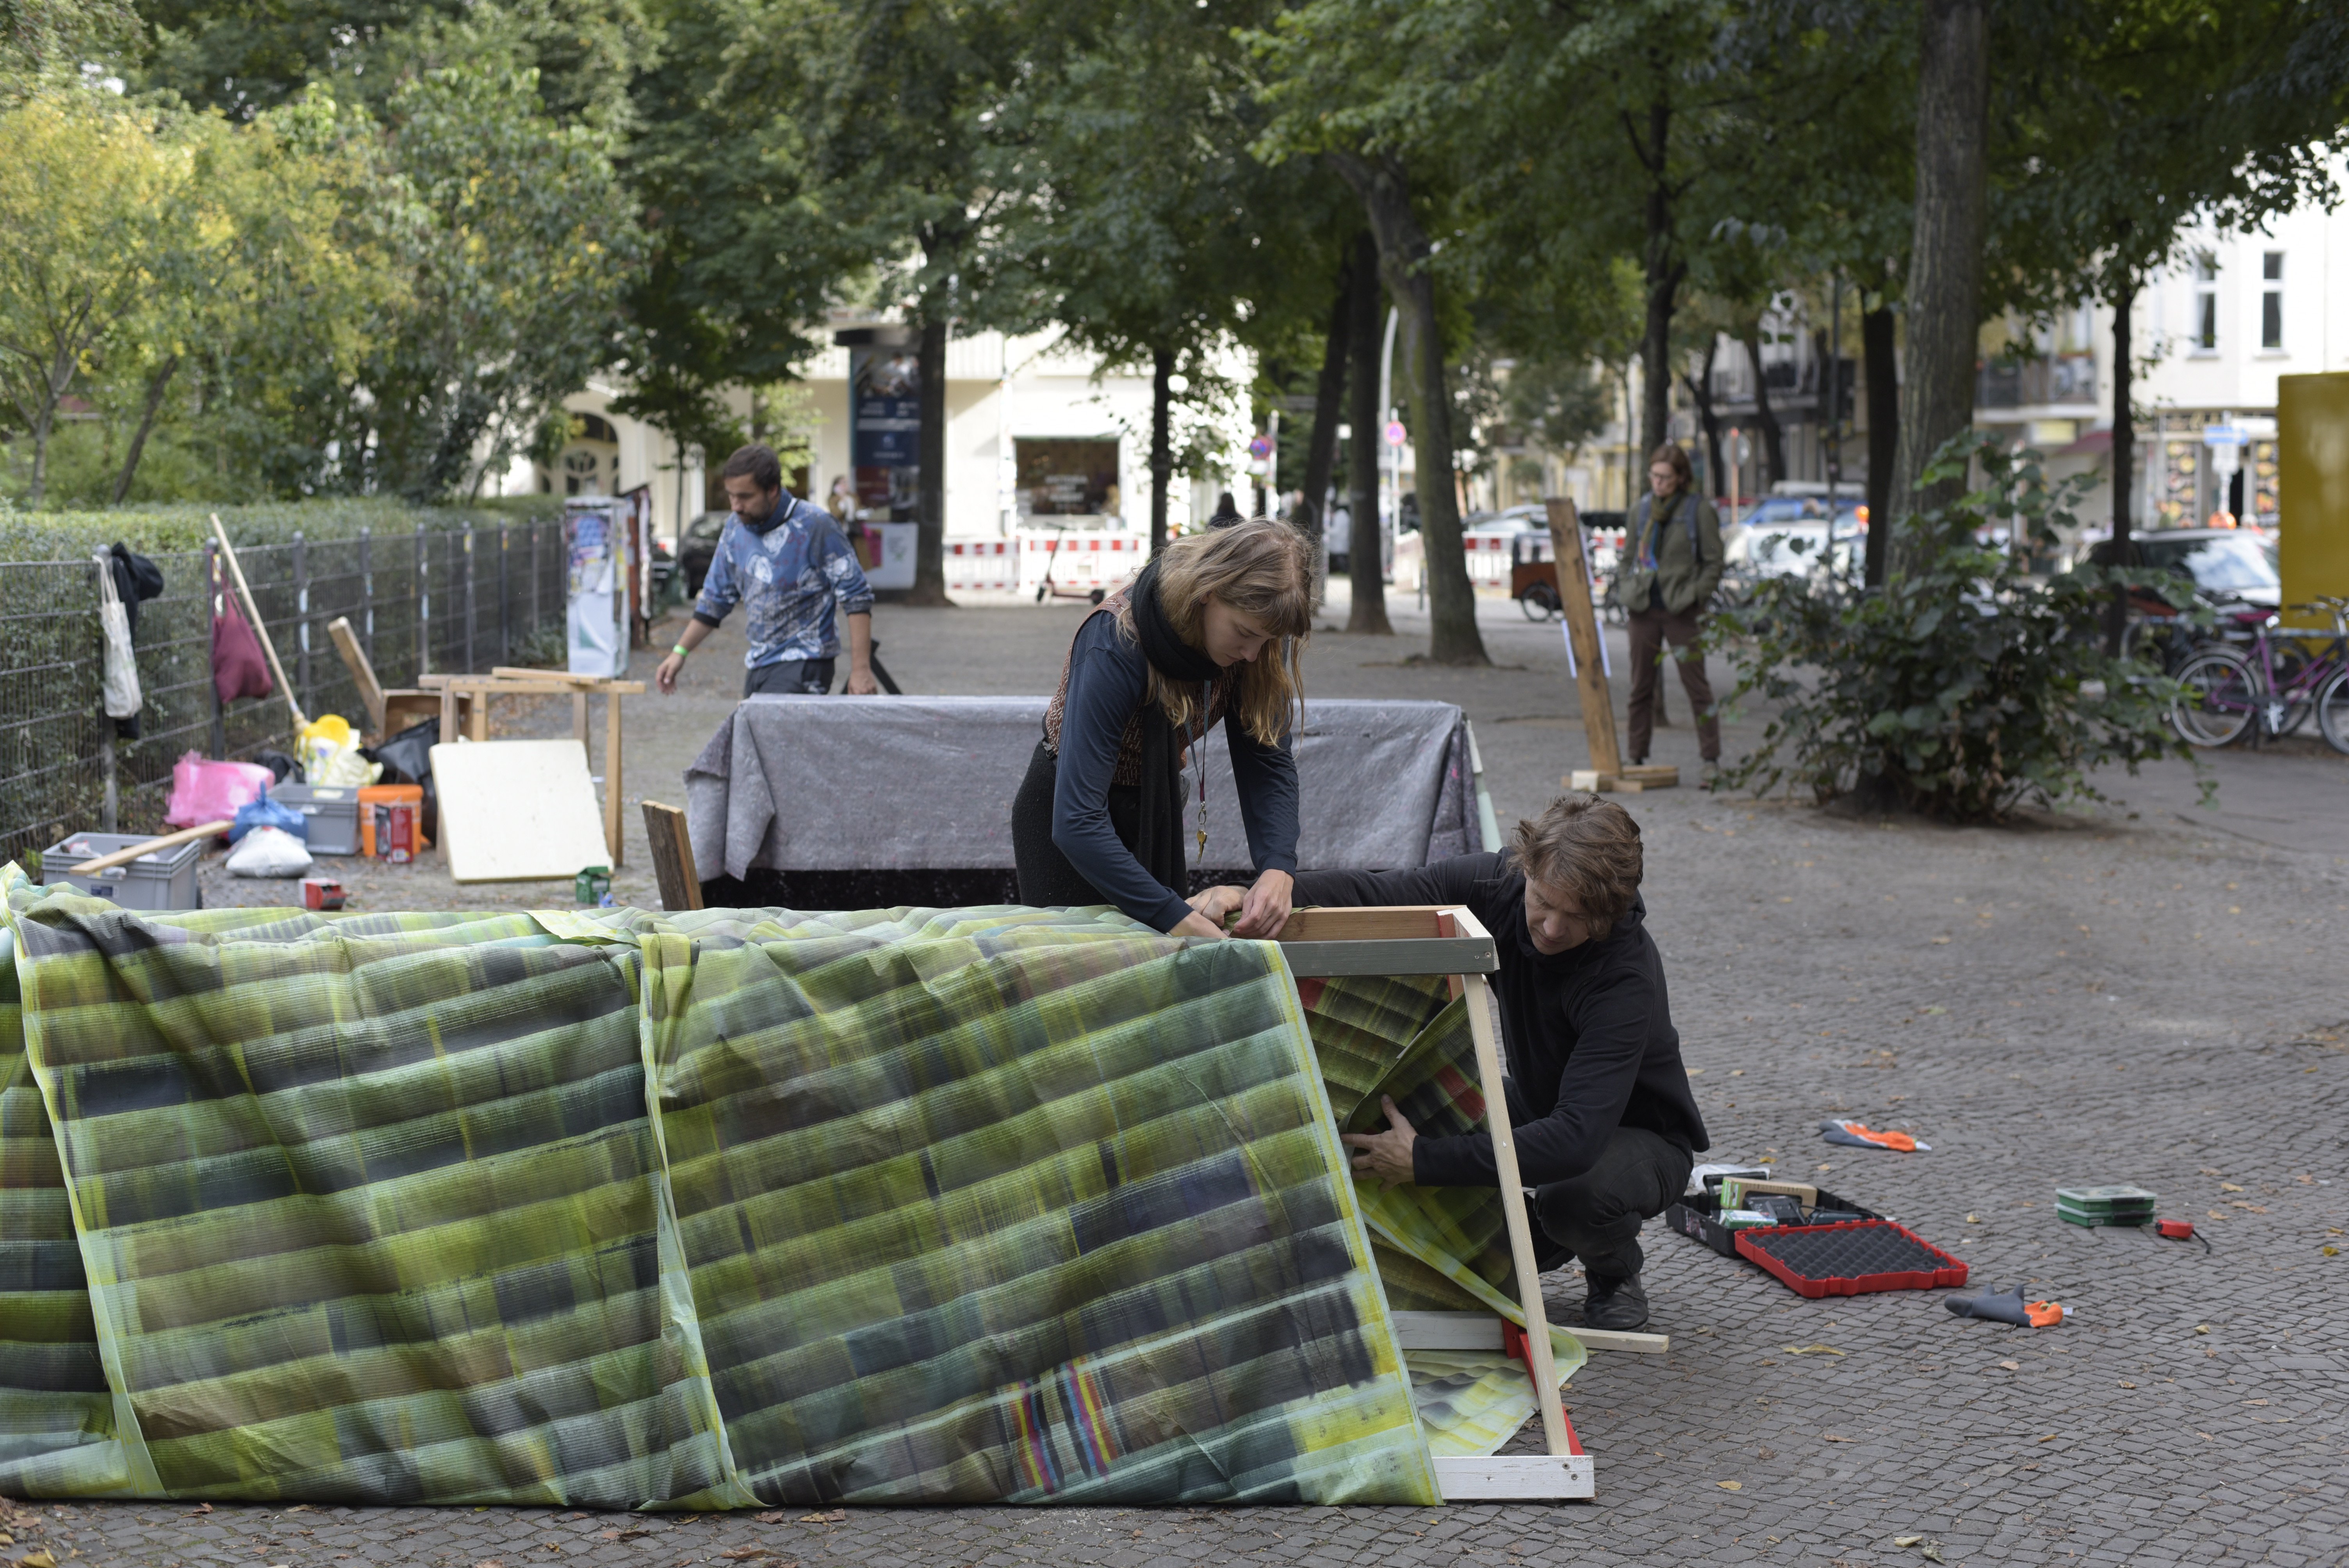 Auf einem gepflasterten Bürgersteig am Boxhagener Platz baut eine Person Skulpturen auf. Im Vordergrund verkleiden zwei Personen ein etwa 1,5 langes und etwa 1m hohes Holzgestell mit grünem Stoff.